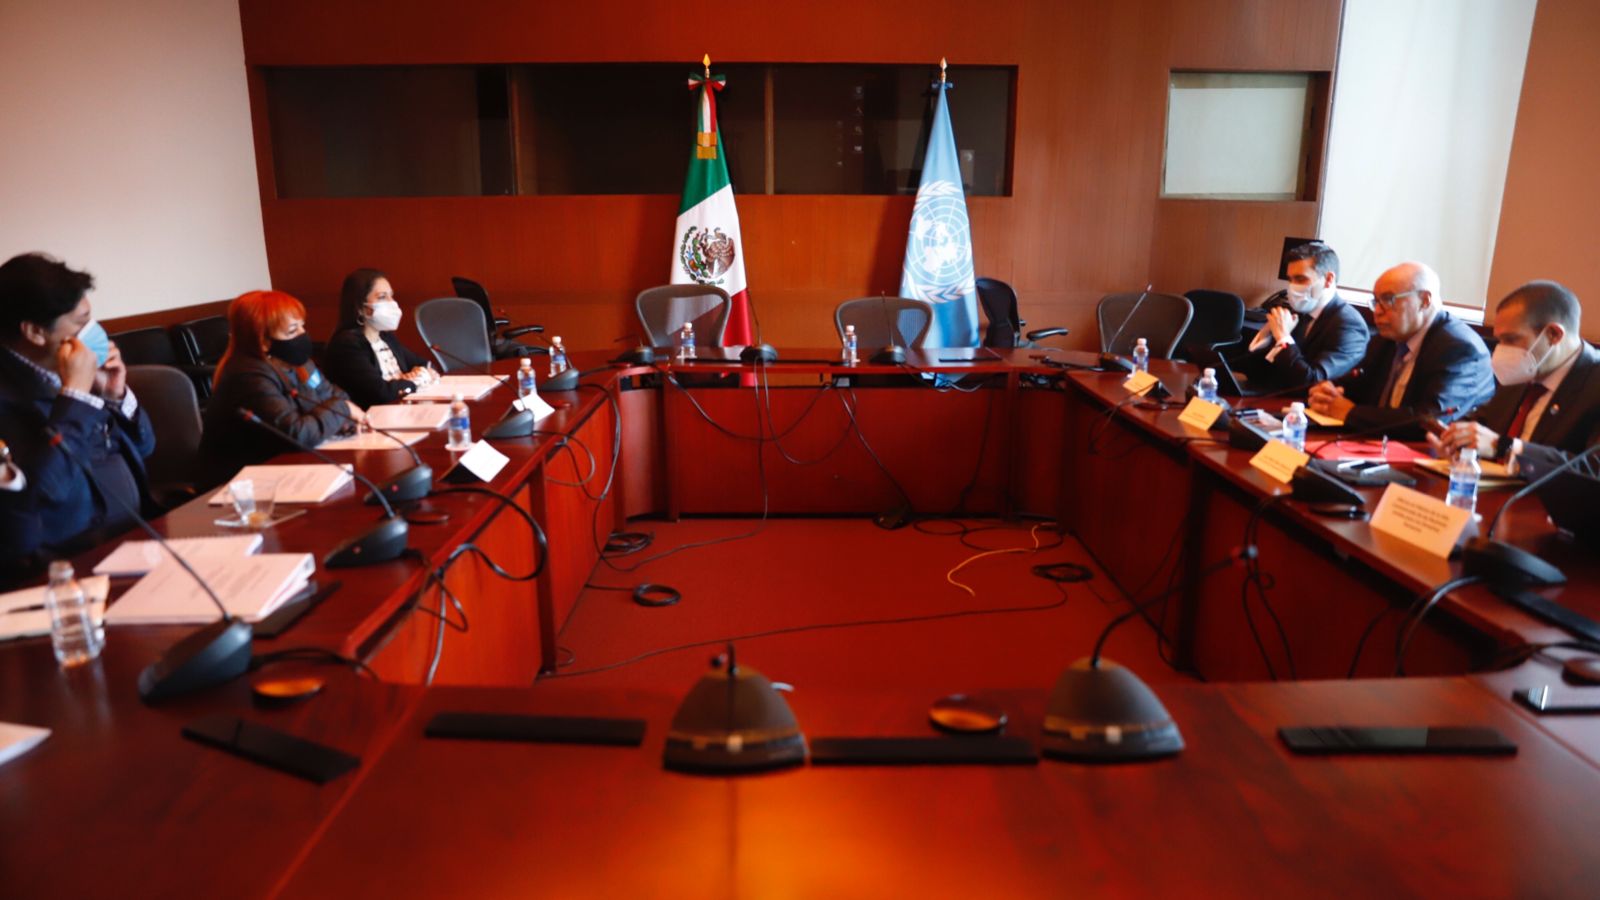 La presidenta de la CNDH, Rosario Piedra Ibarra, se reunió con integrantes del Comité contra la Desaparición Forzada de la ONU, a quienes presentó una serie de propuestas para atender ese flagelo de manera integral